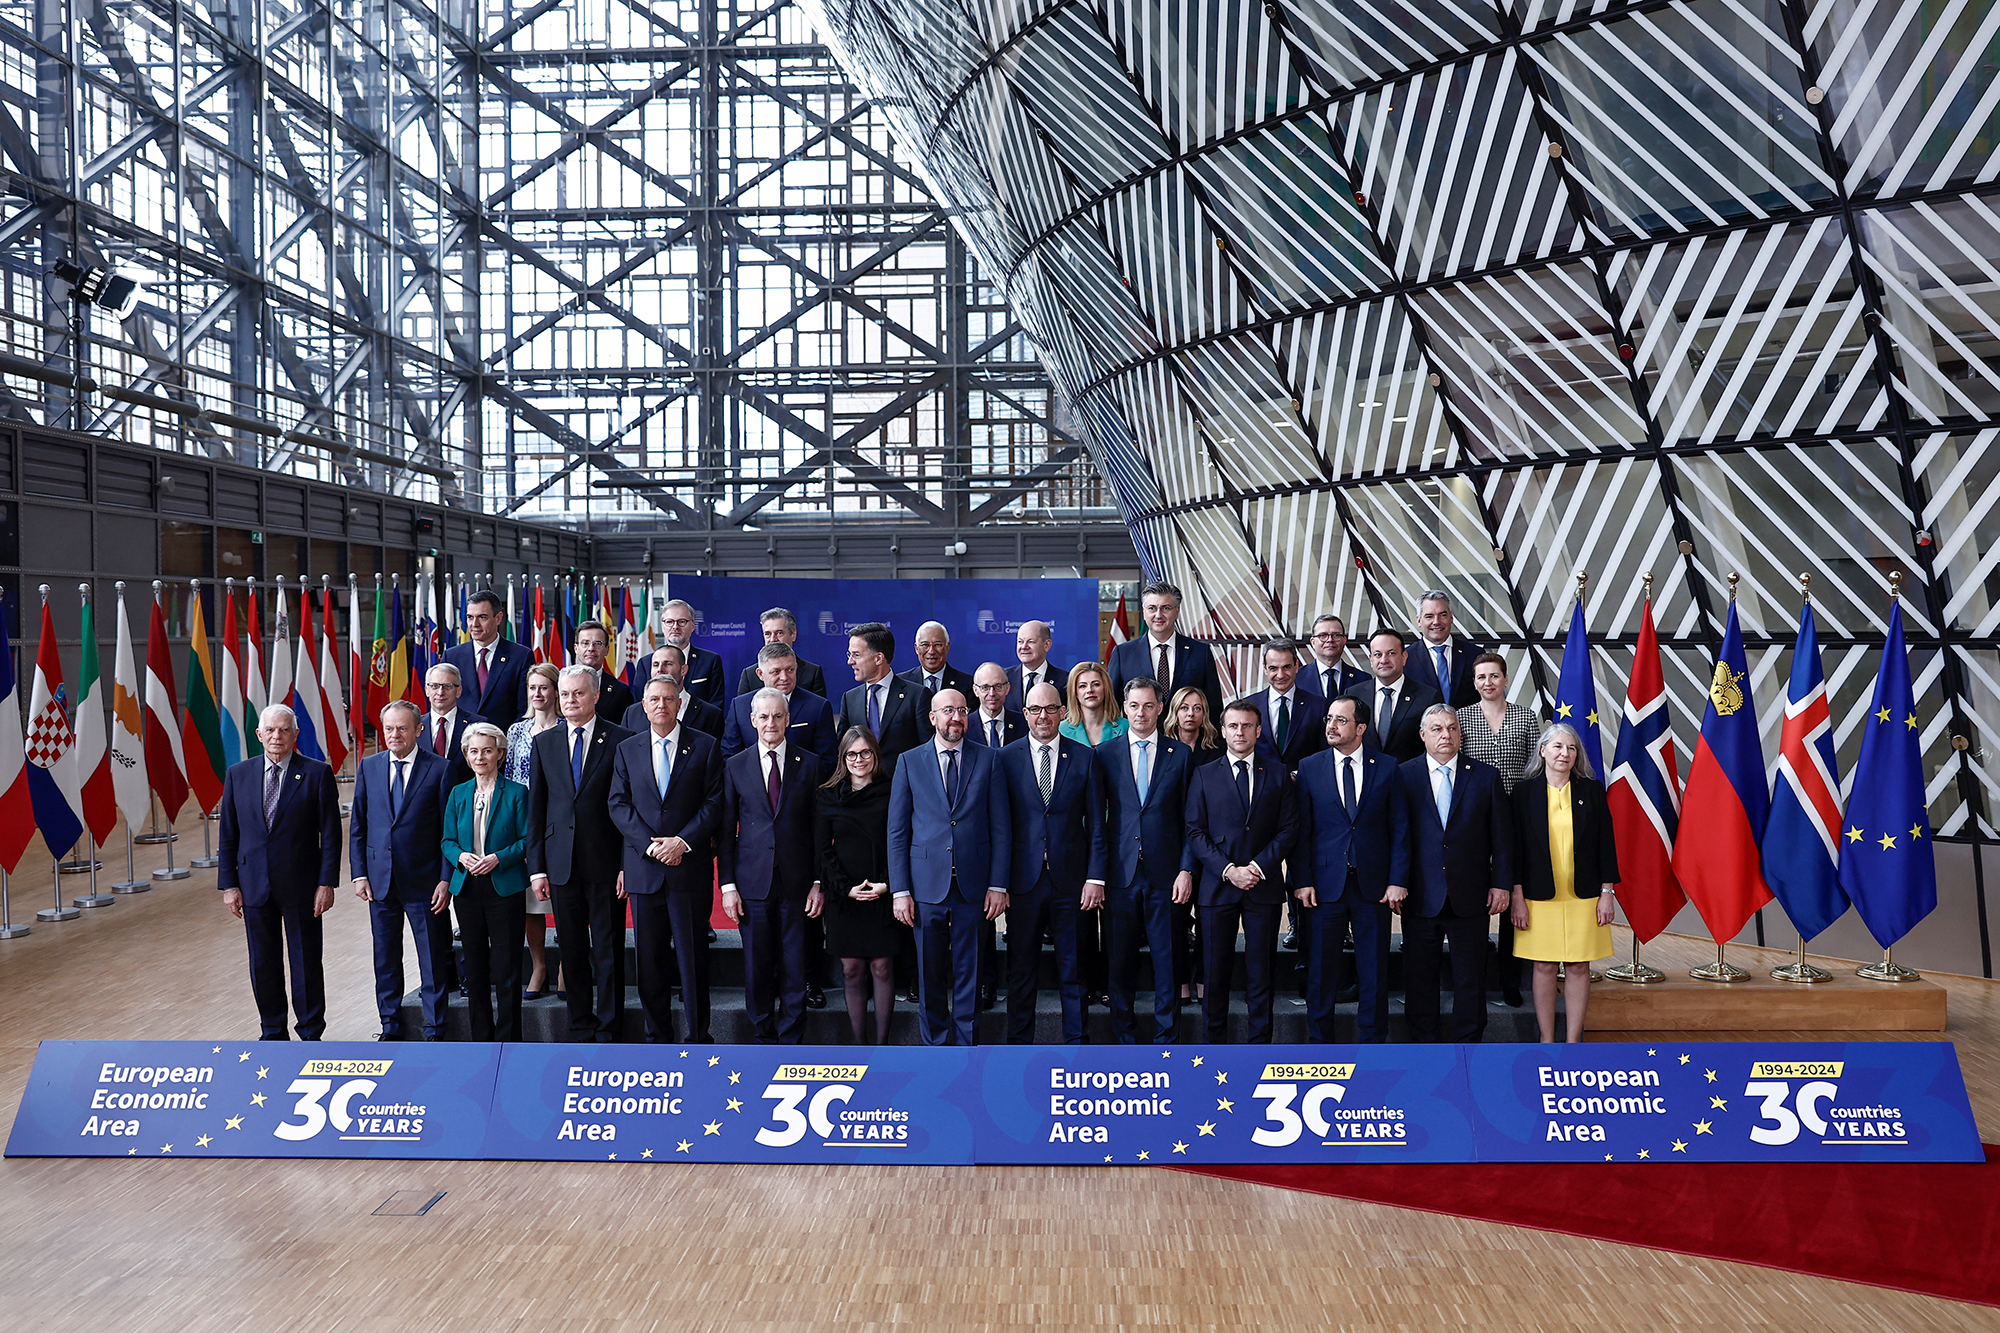 Gruppenfoto der EU-Staats- und Regierungschefs